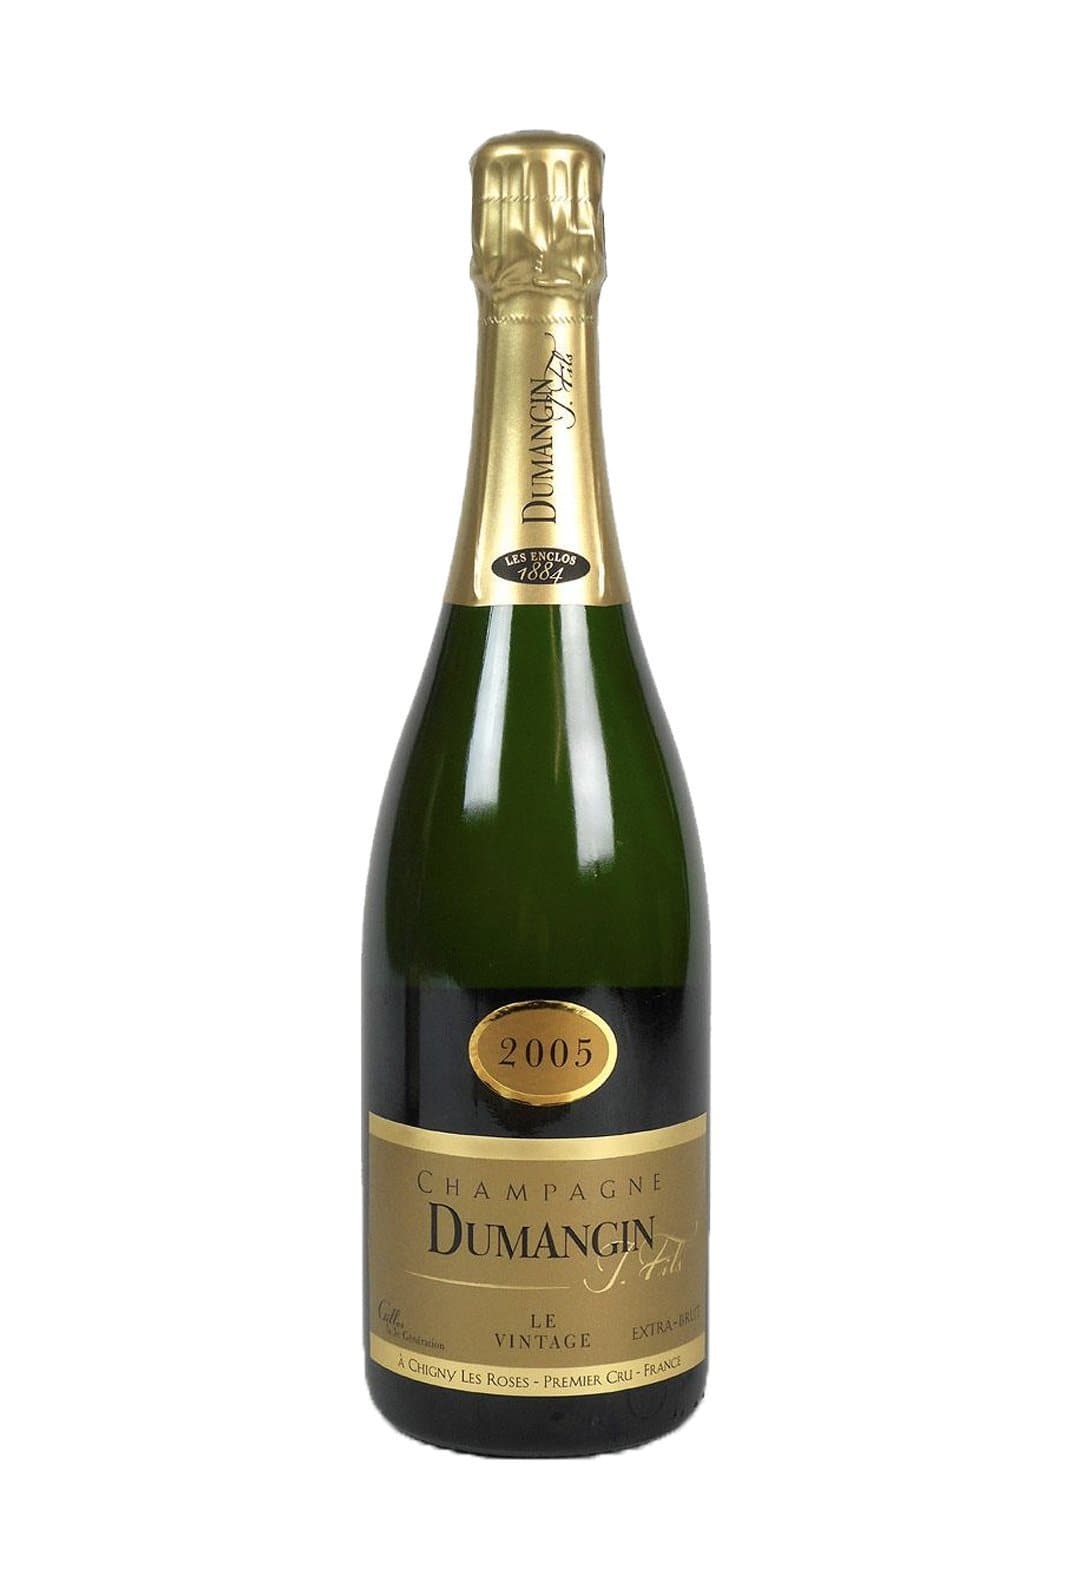 Dumangin Champagne 1er Cru 12% 750ml | Wine | Shop online at Spirits of France